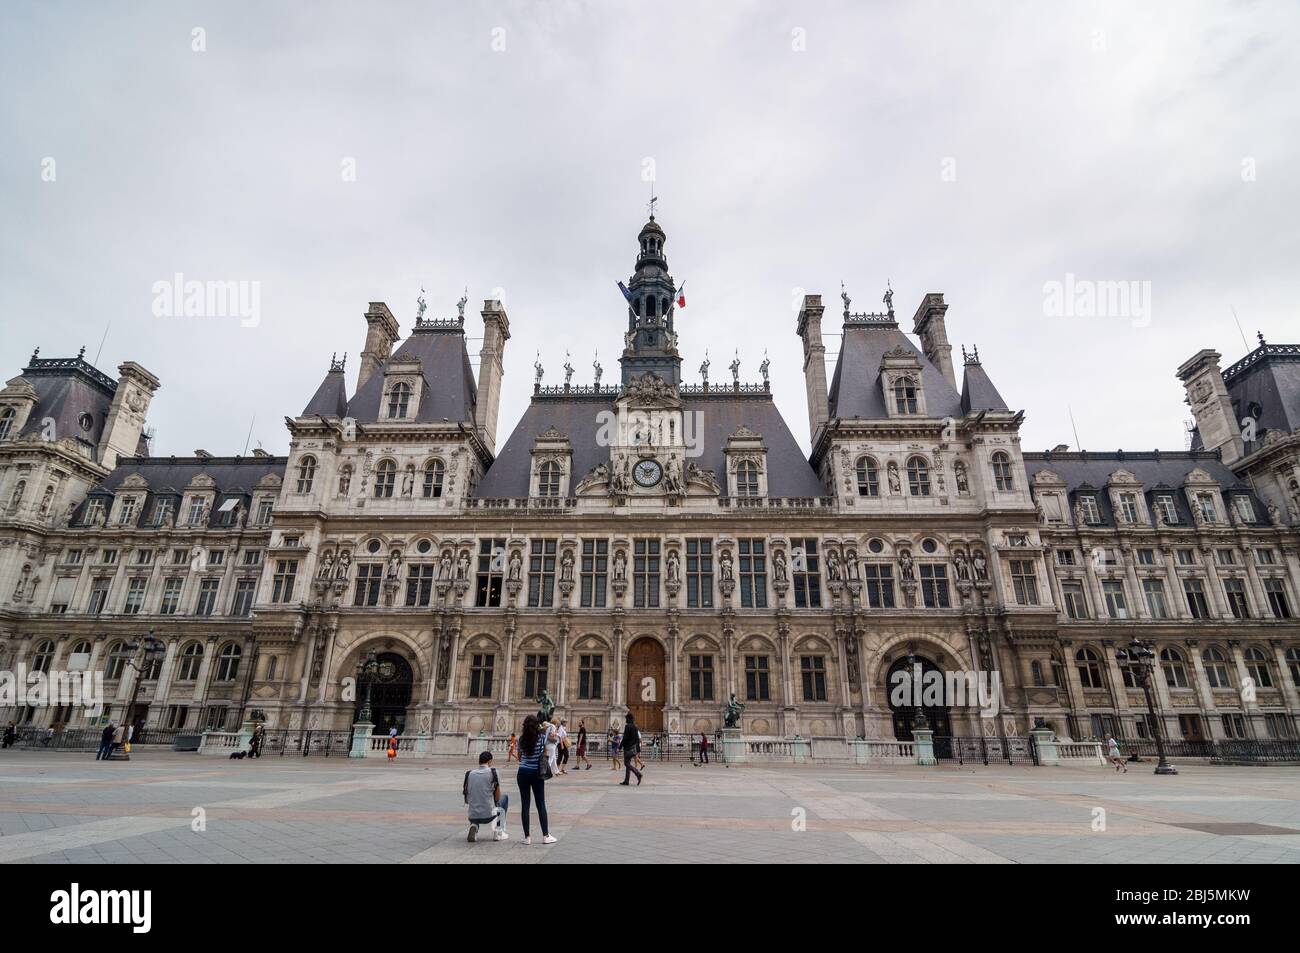 PARIS - SEPT 16, 2014: The Hotel de Ville or City Hall is the building ...